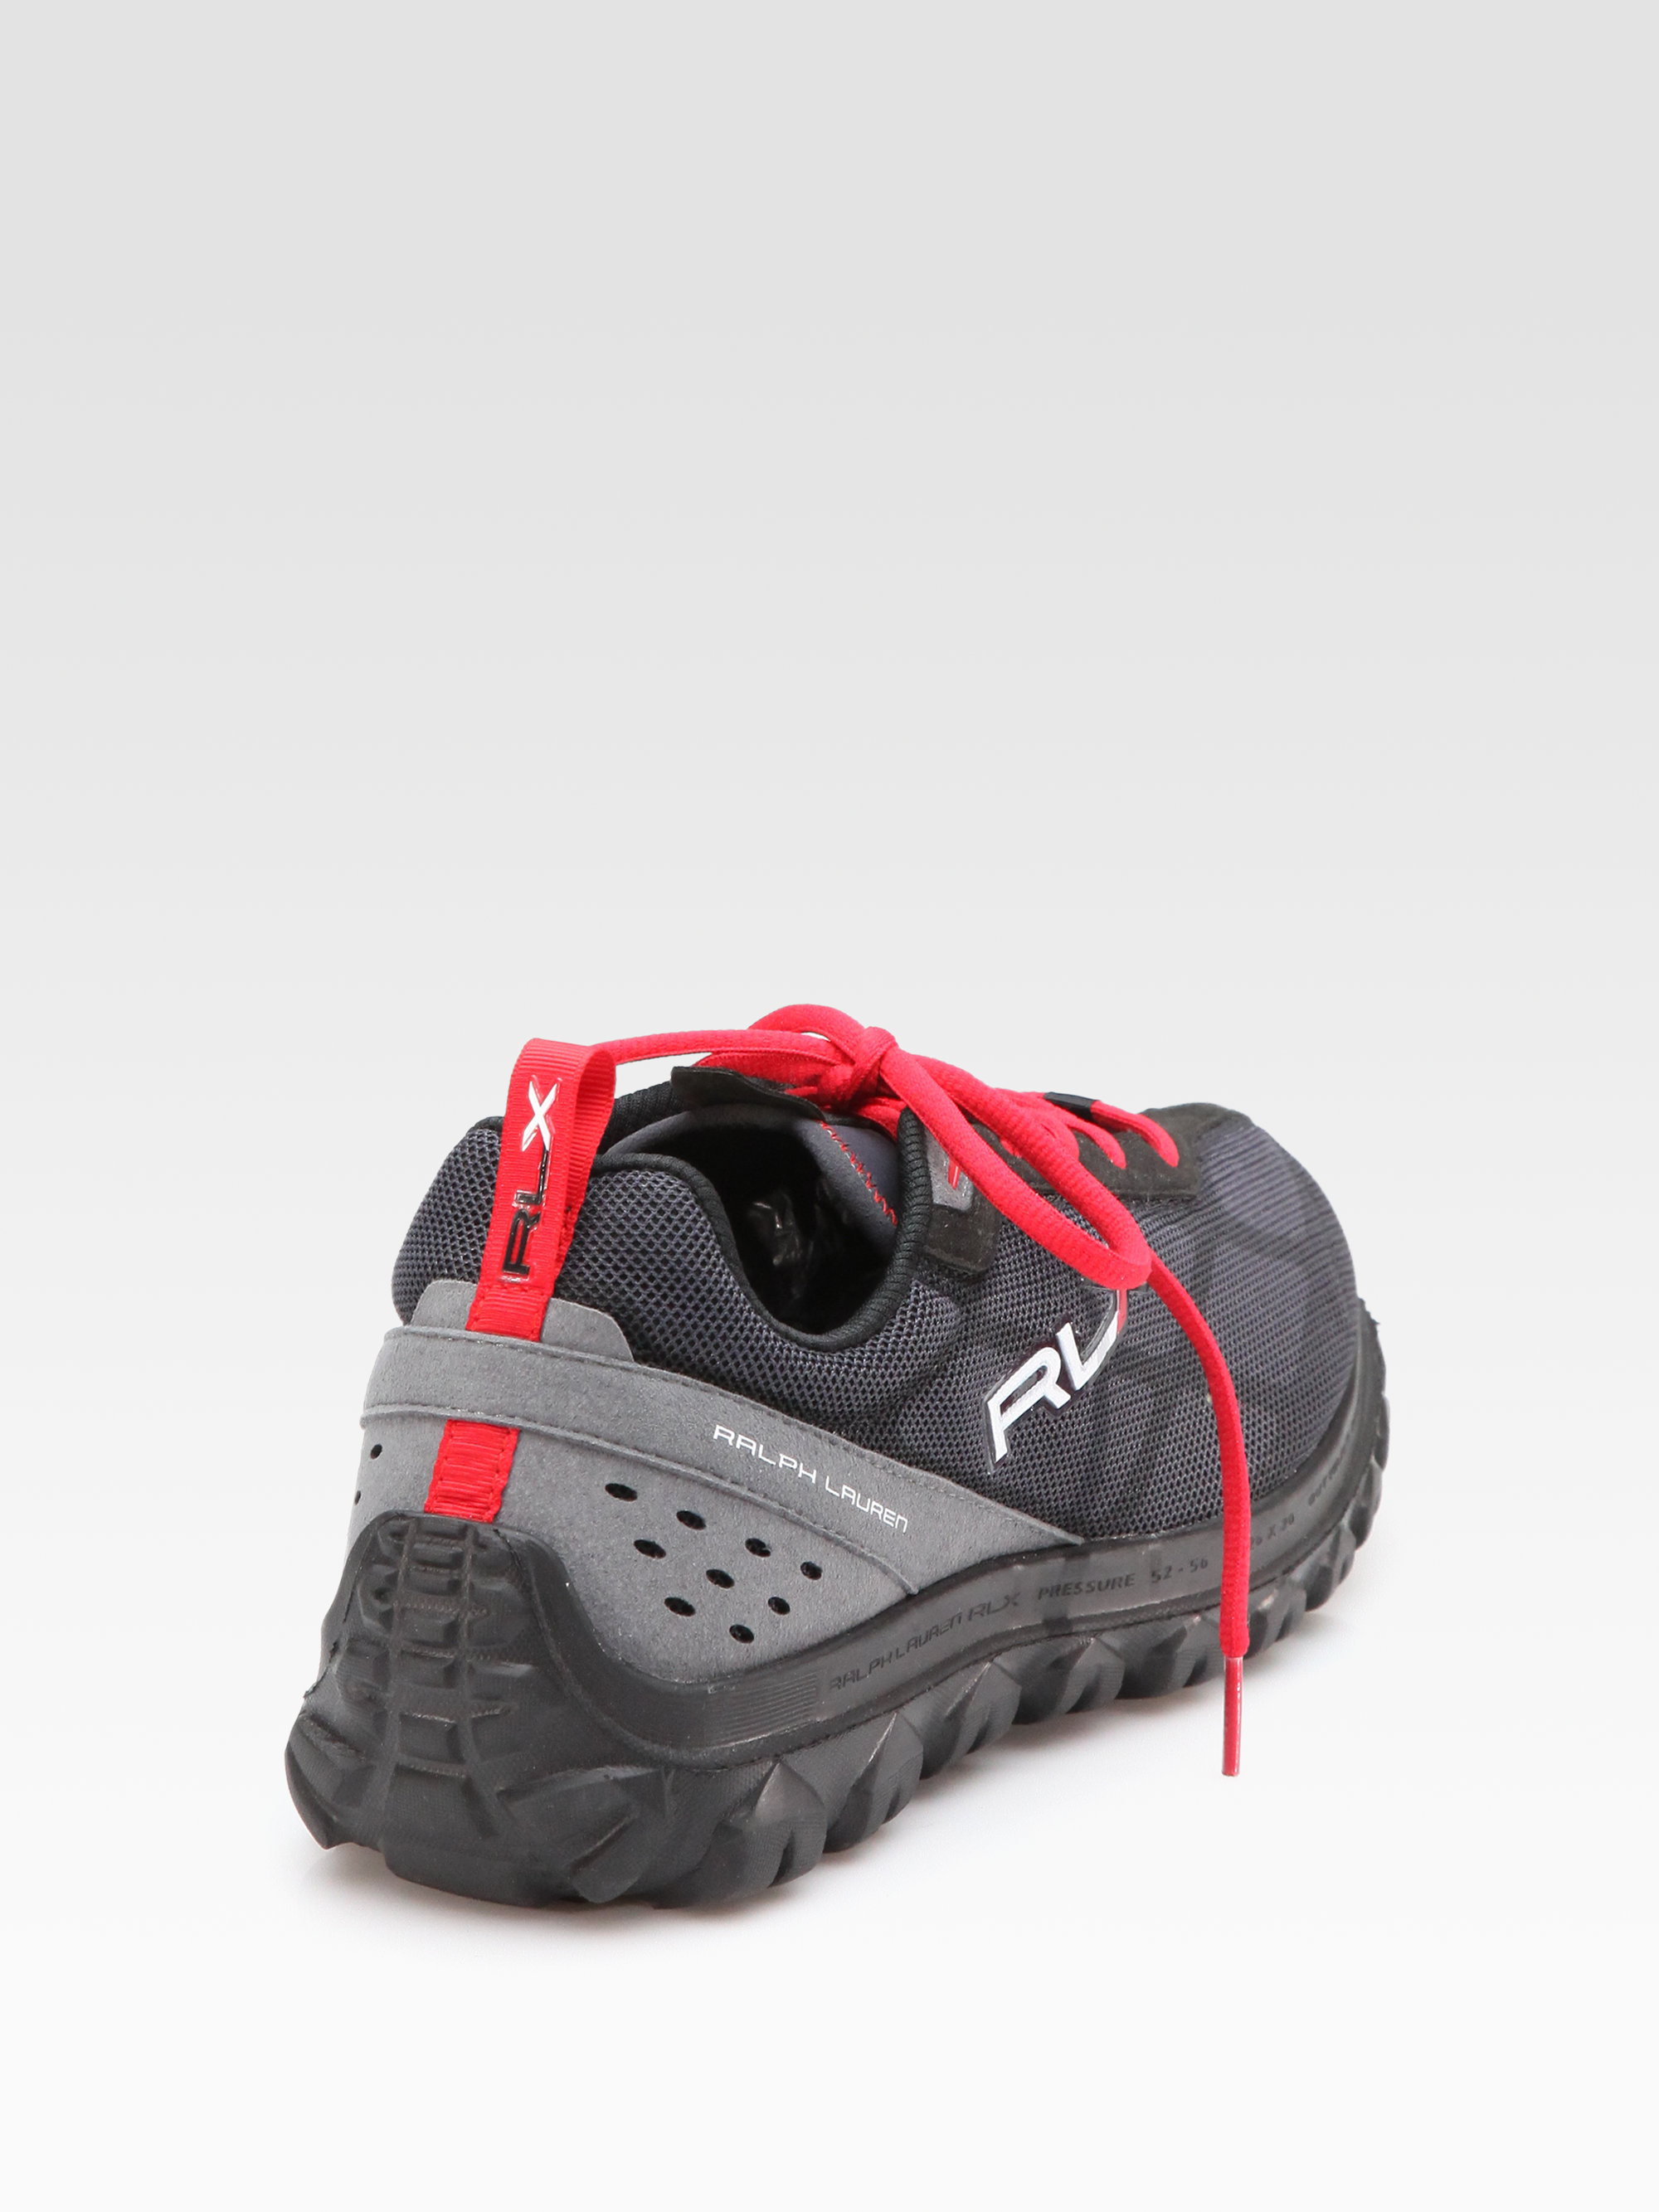 RLX Ralph Lauren Low-top Trail Sneakers 